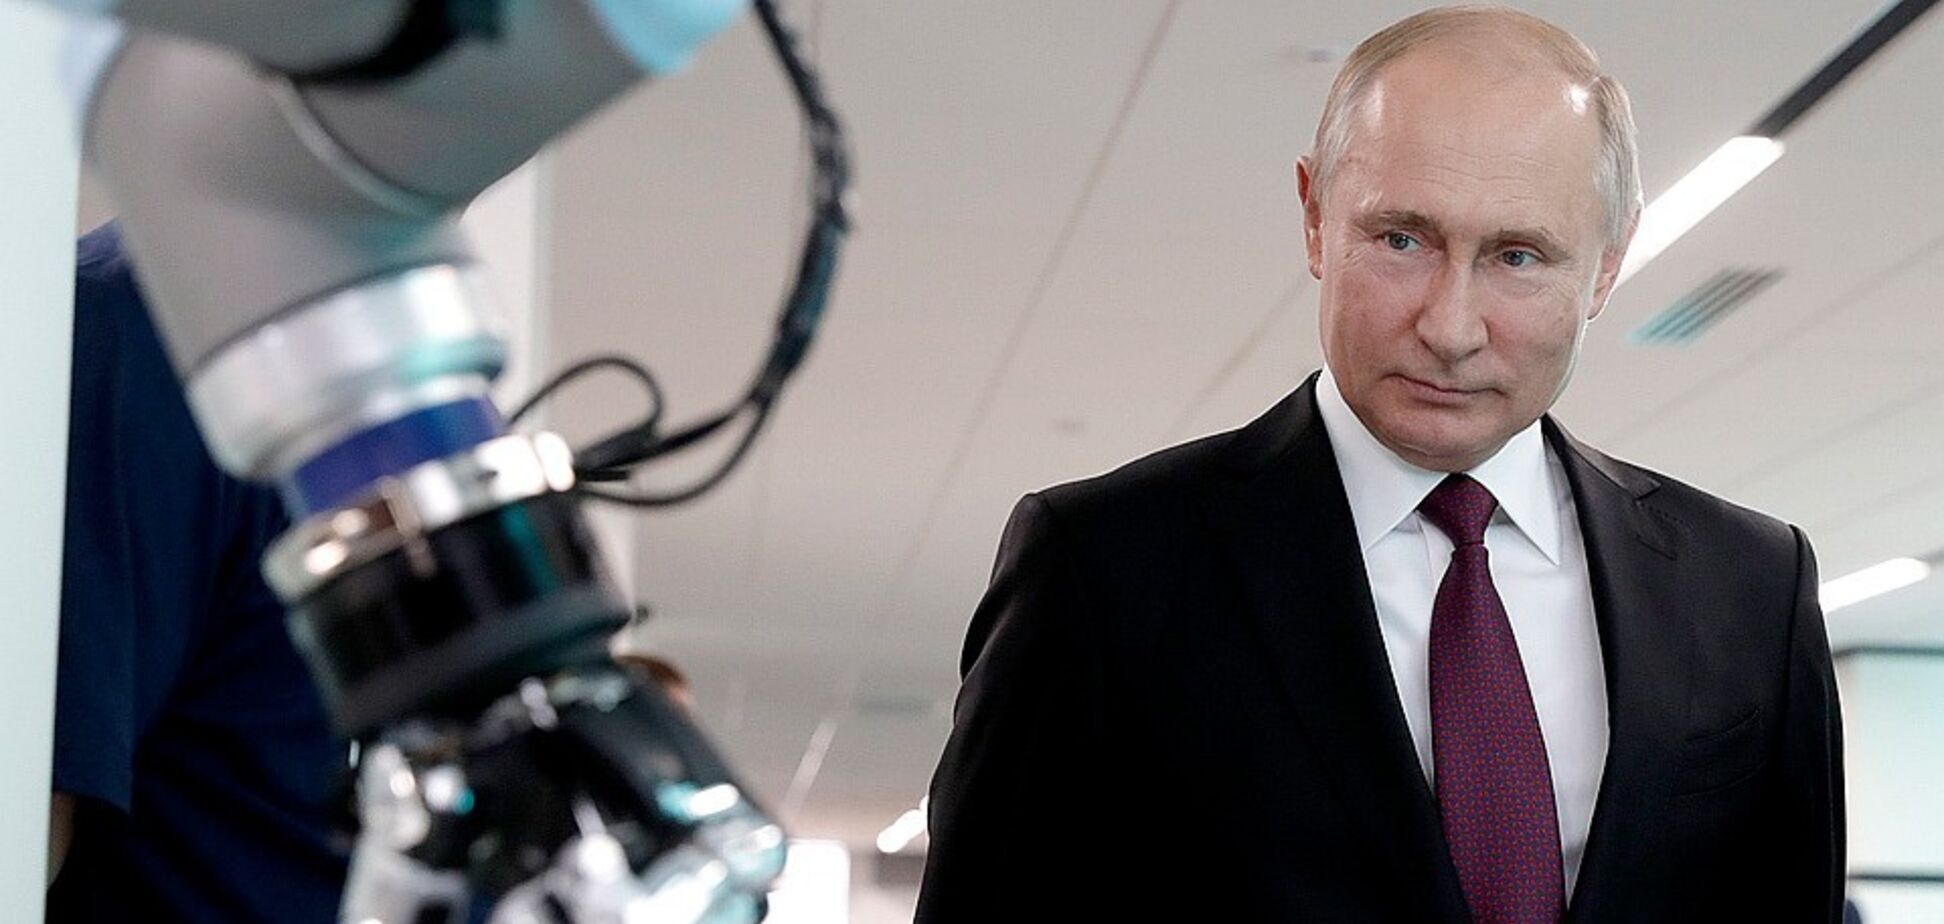 'У калошах топають у сортир': Путіна висміяли за амбіції про світове лідерство